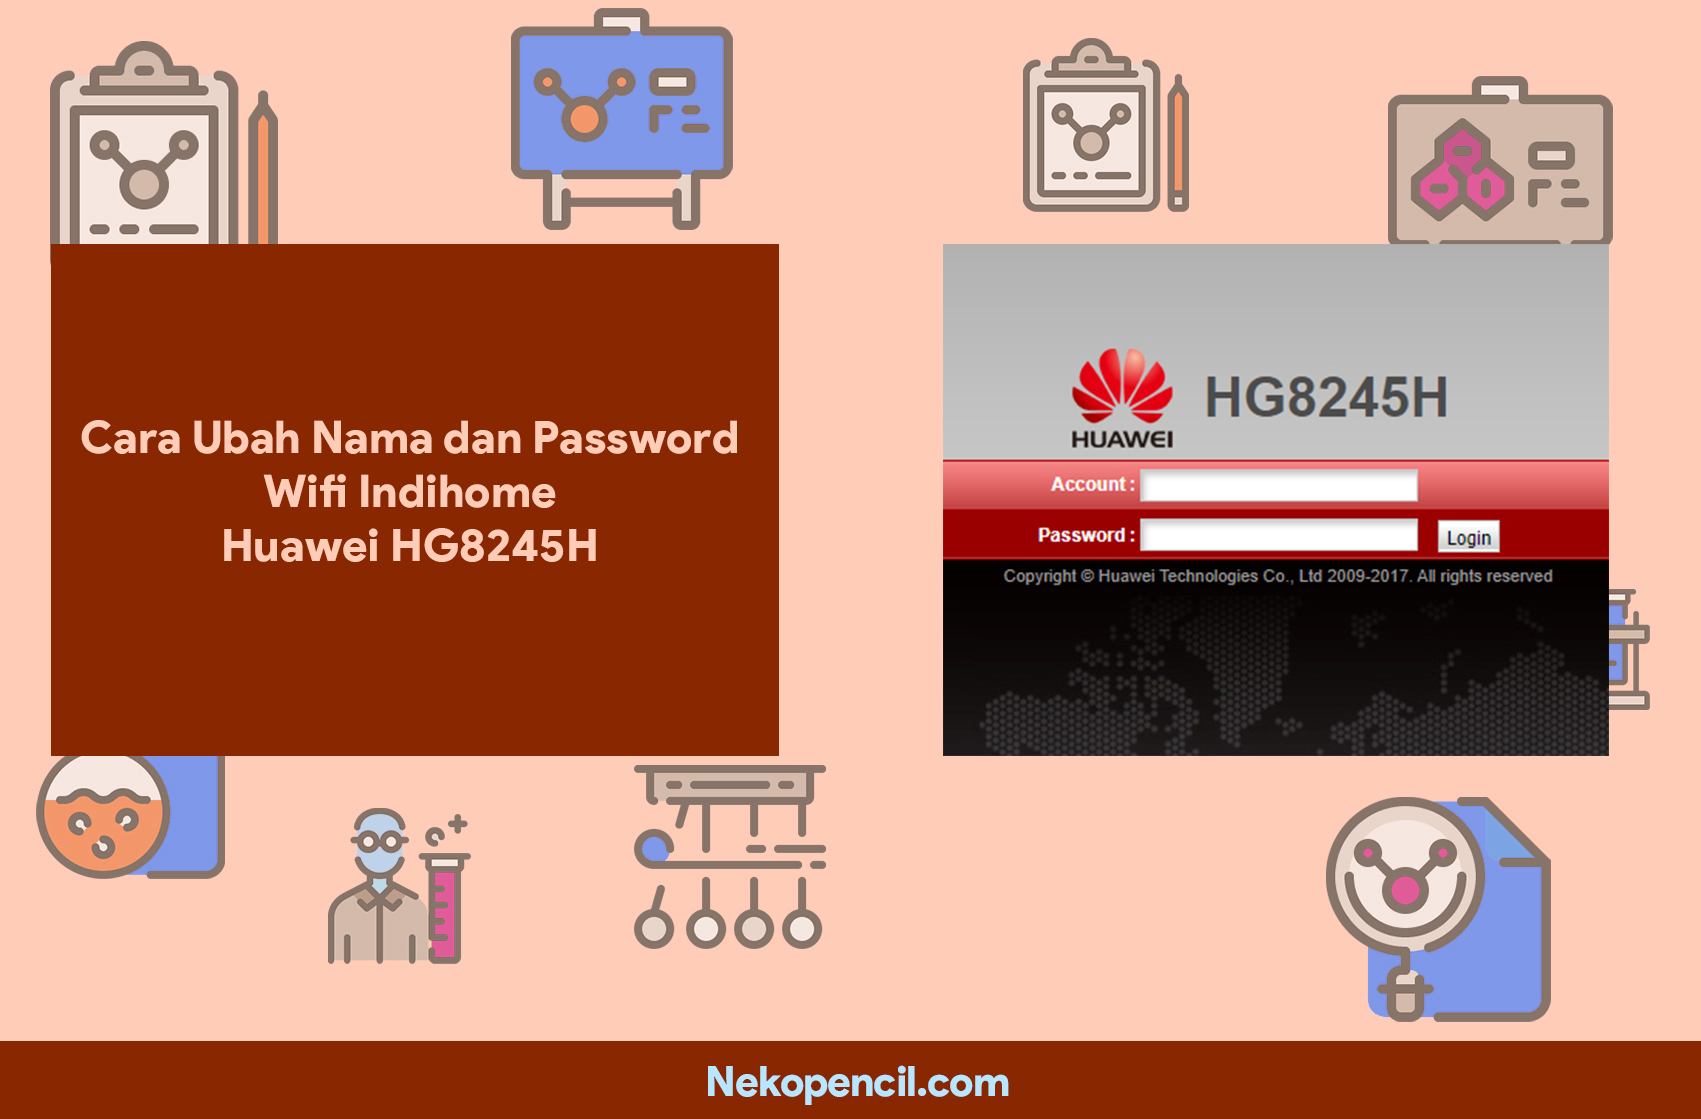 Cara Mengetahui Password Wifi Huawei Hg8245h. Cara Ubah Nama dan Password Wifi Indihome Huawei HG8245H